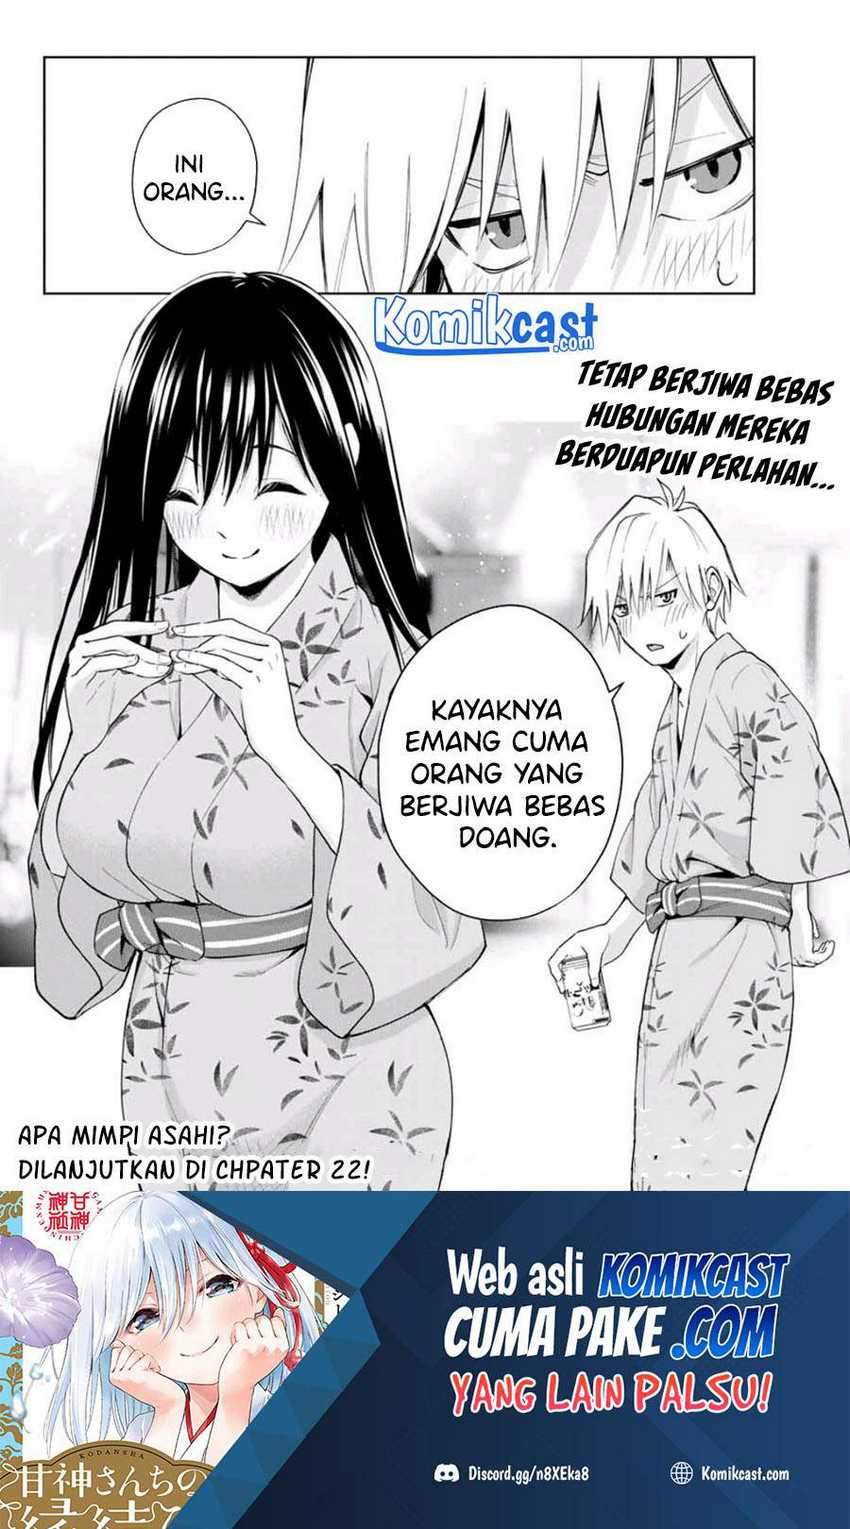 Amagami-san Chi No Enmusubi Chapter 21